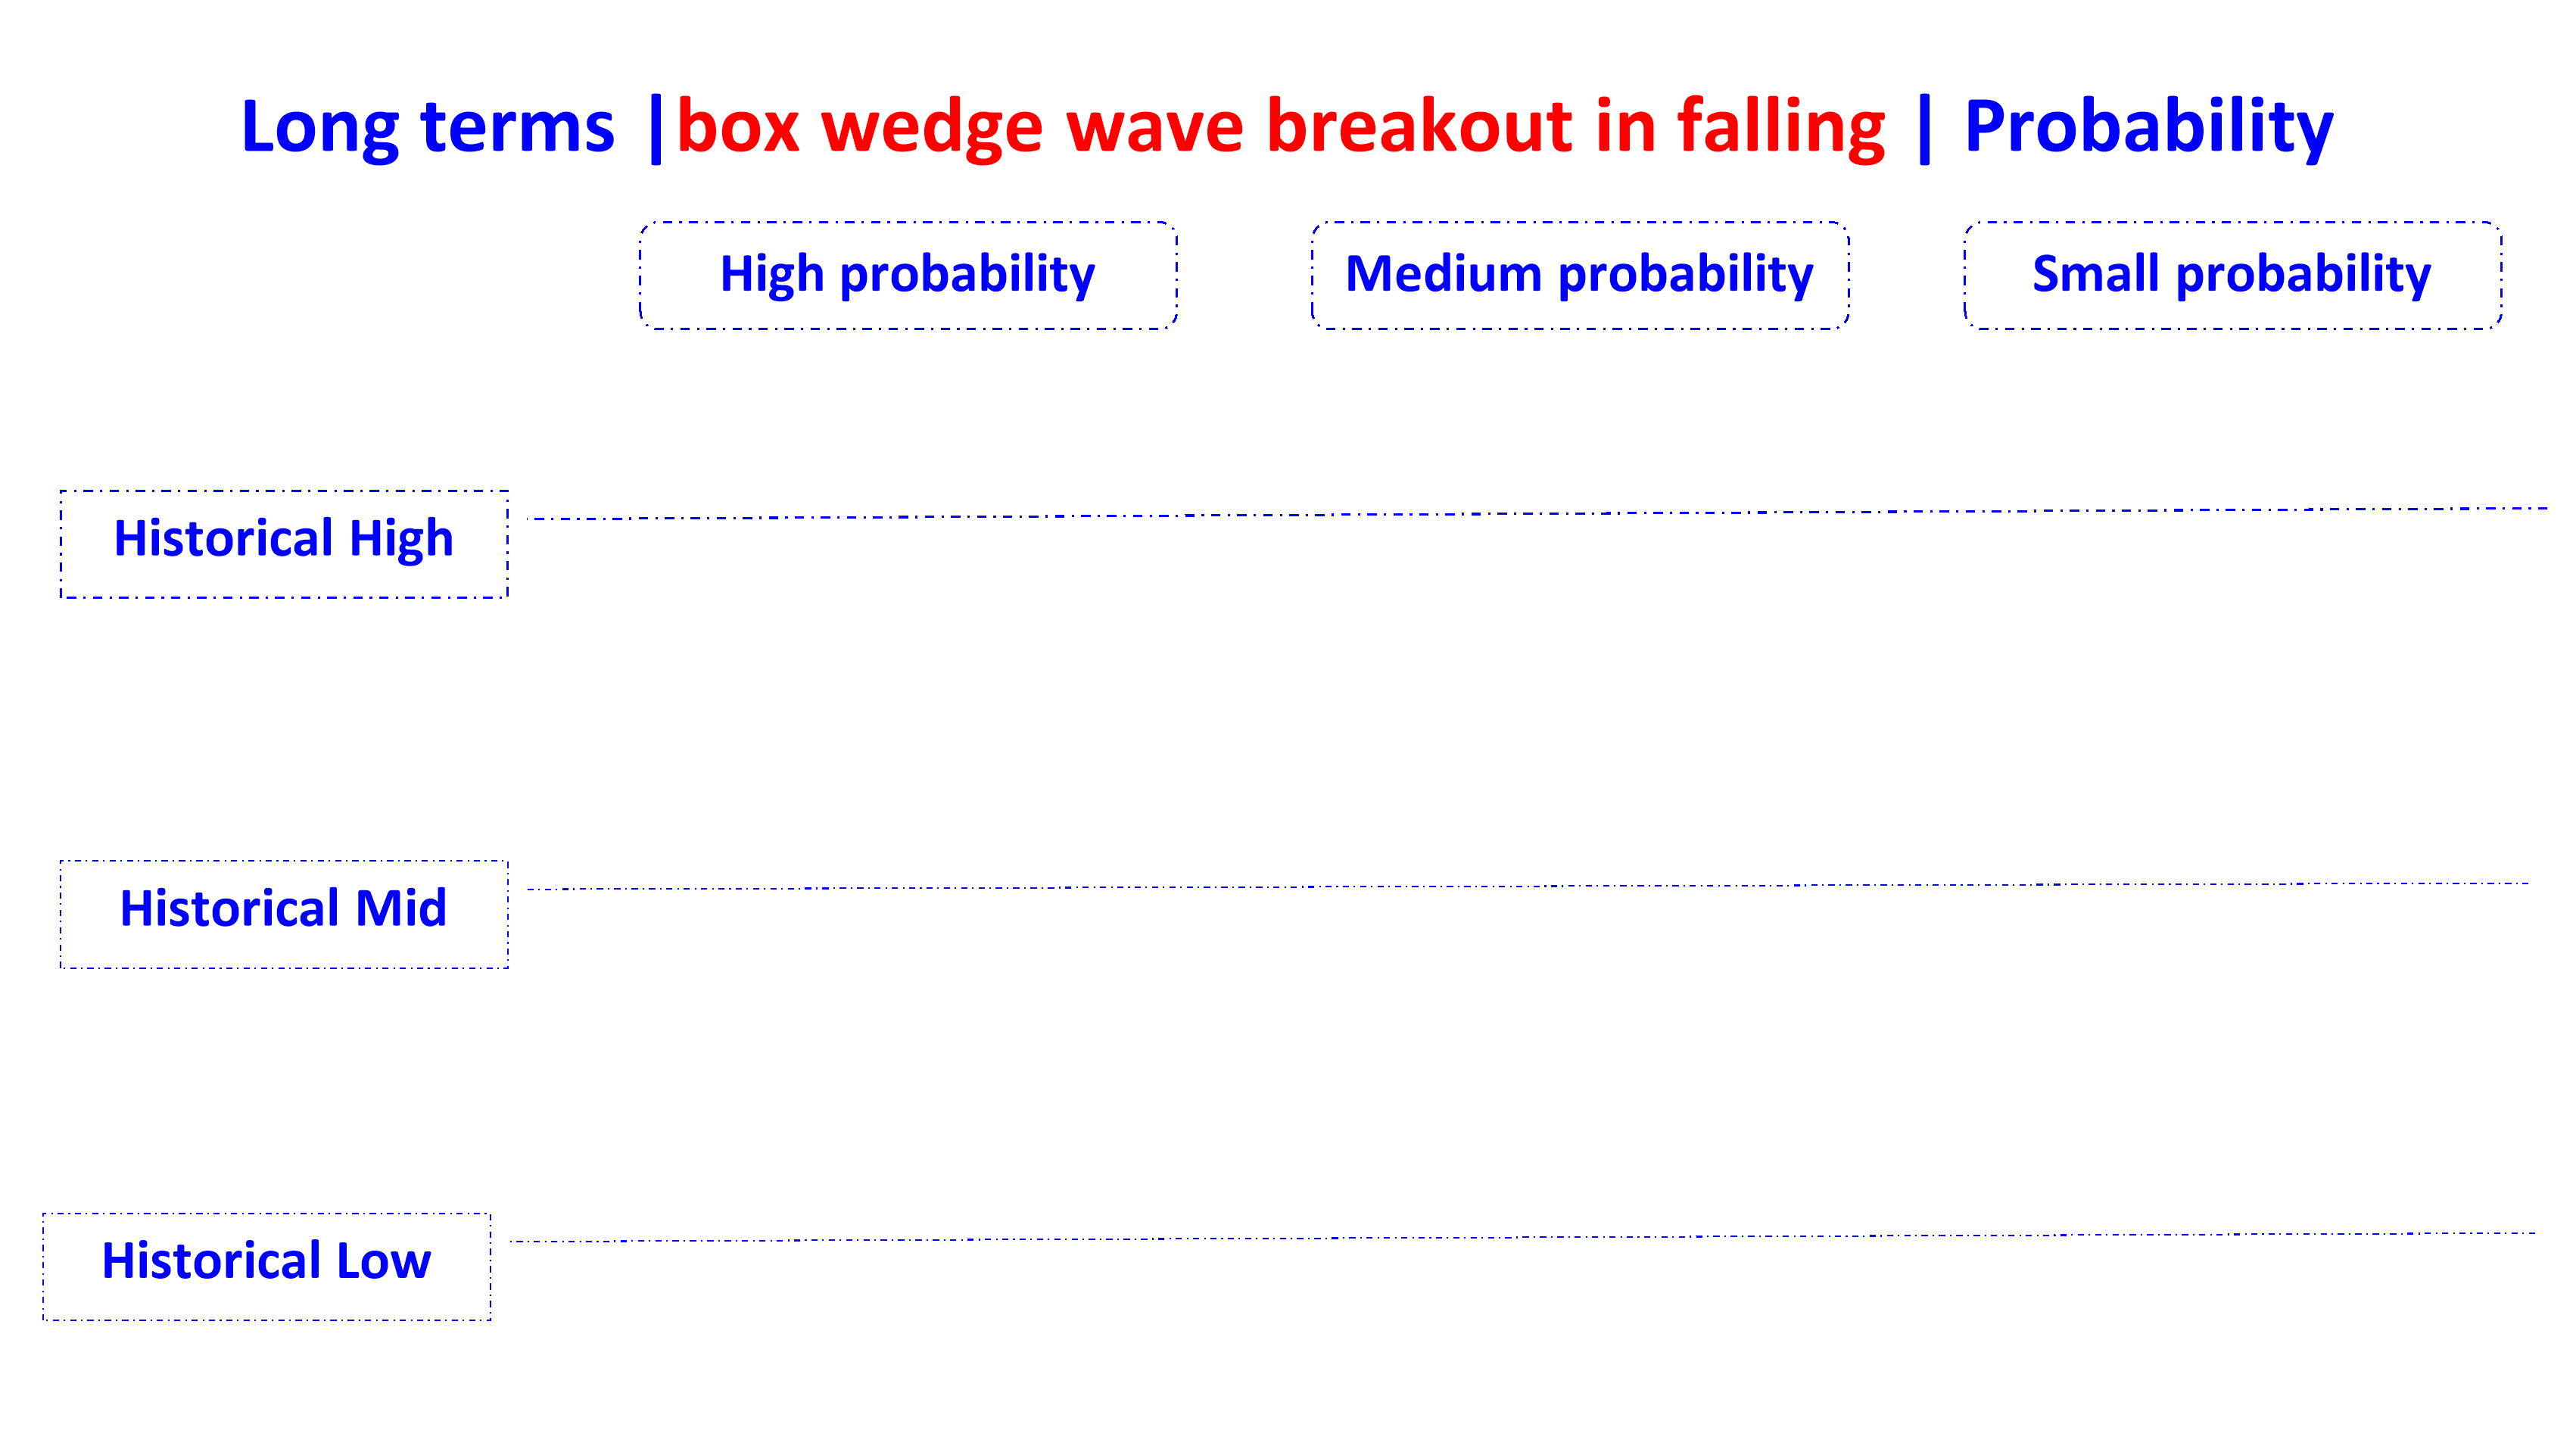 box wedge wave breakout in falling en